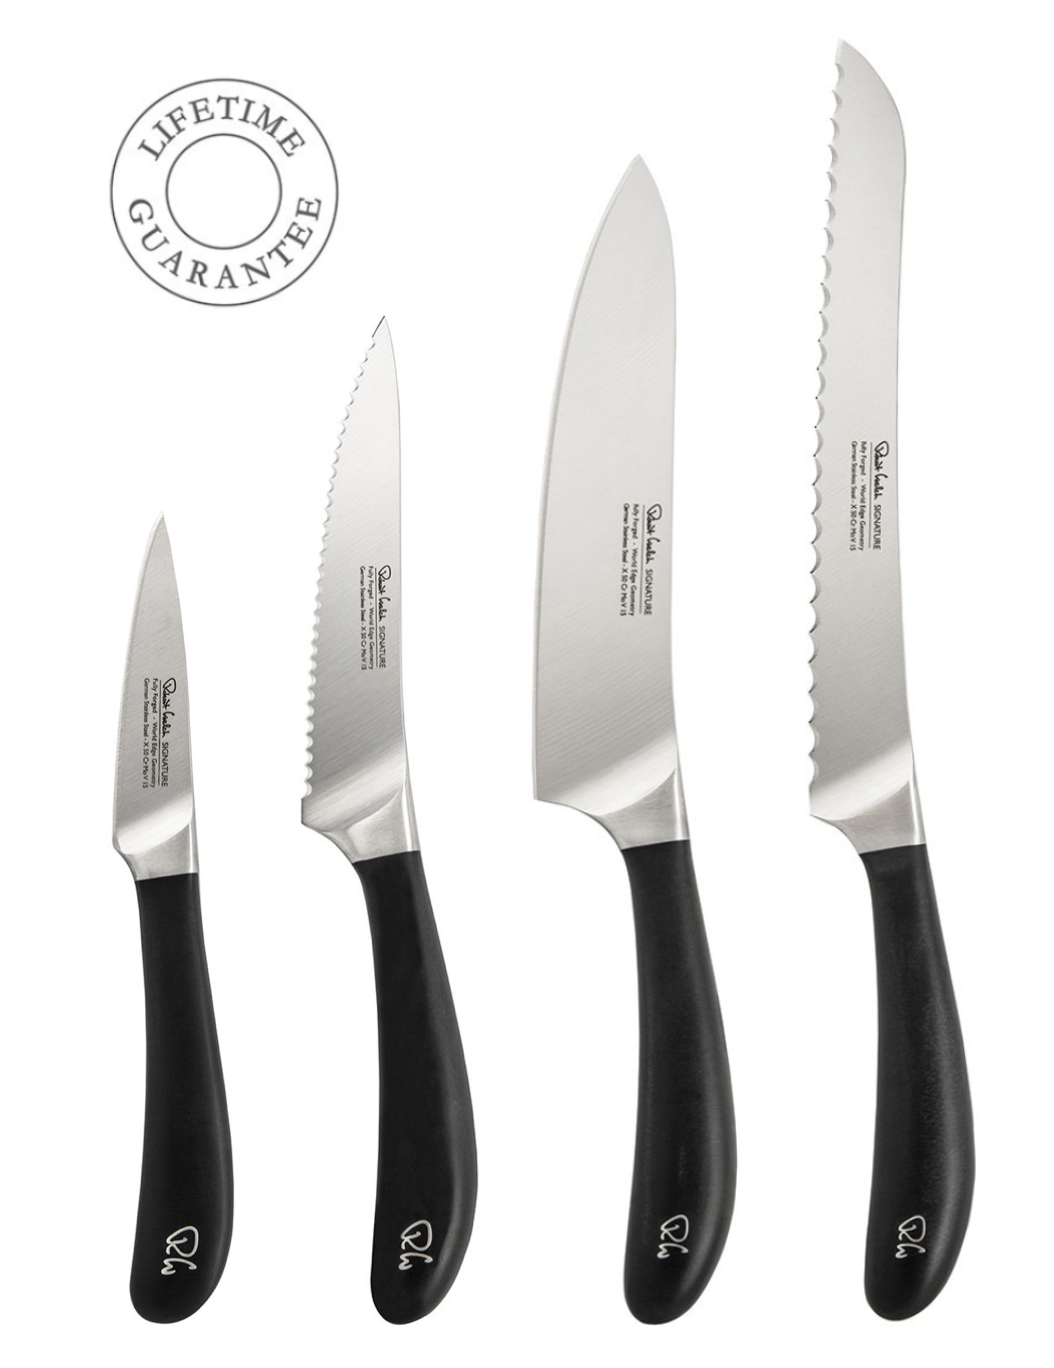 Robert Welch Robert Welch Kitchen Knife Collection - Fabulous Four!